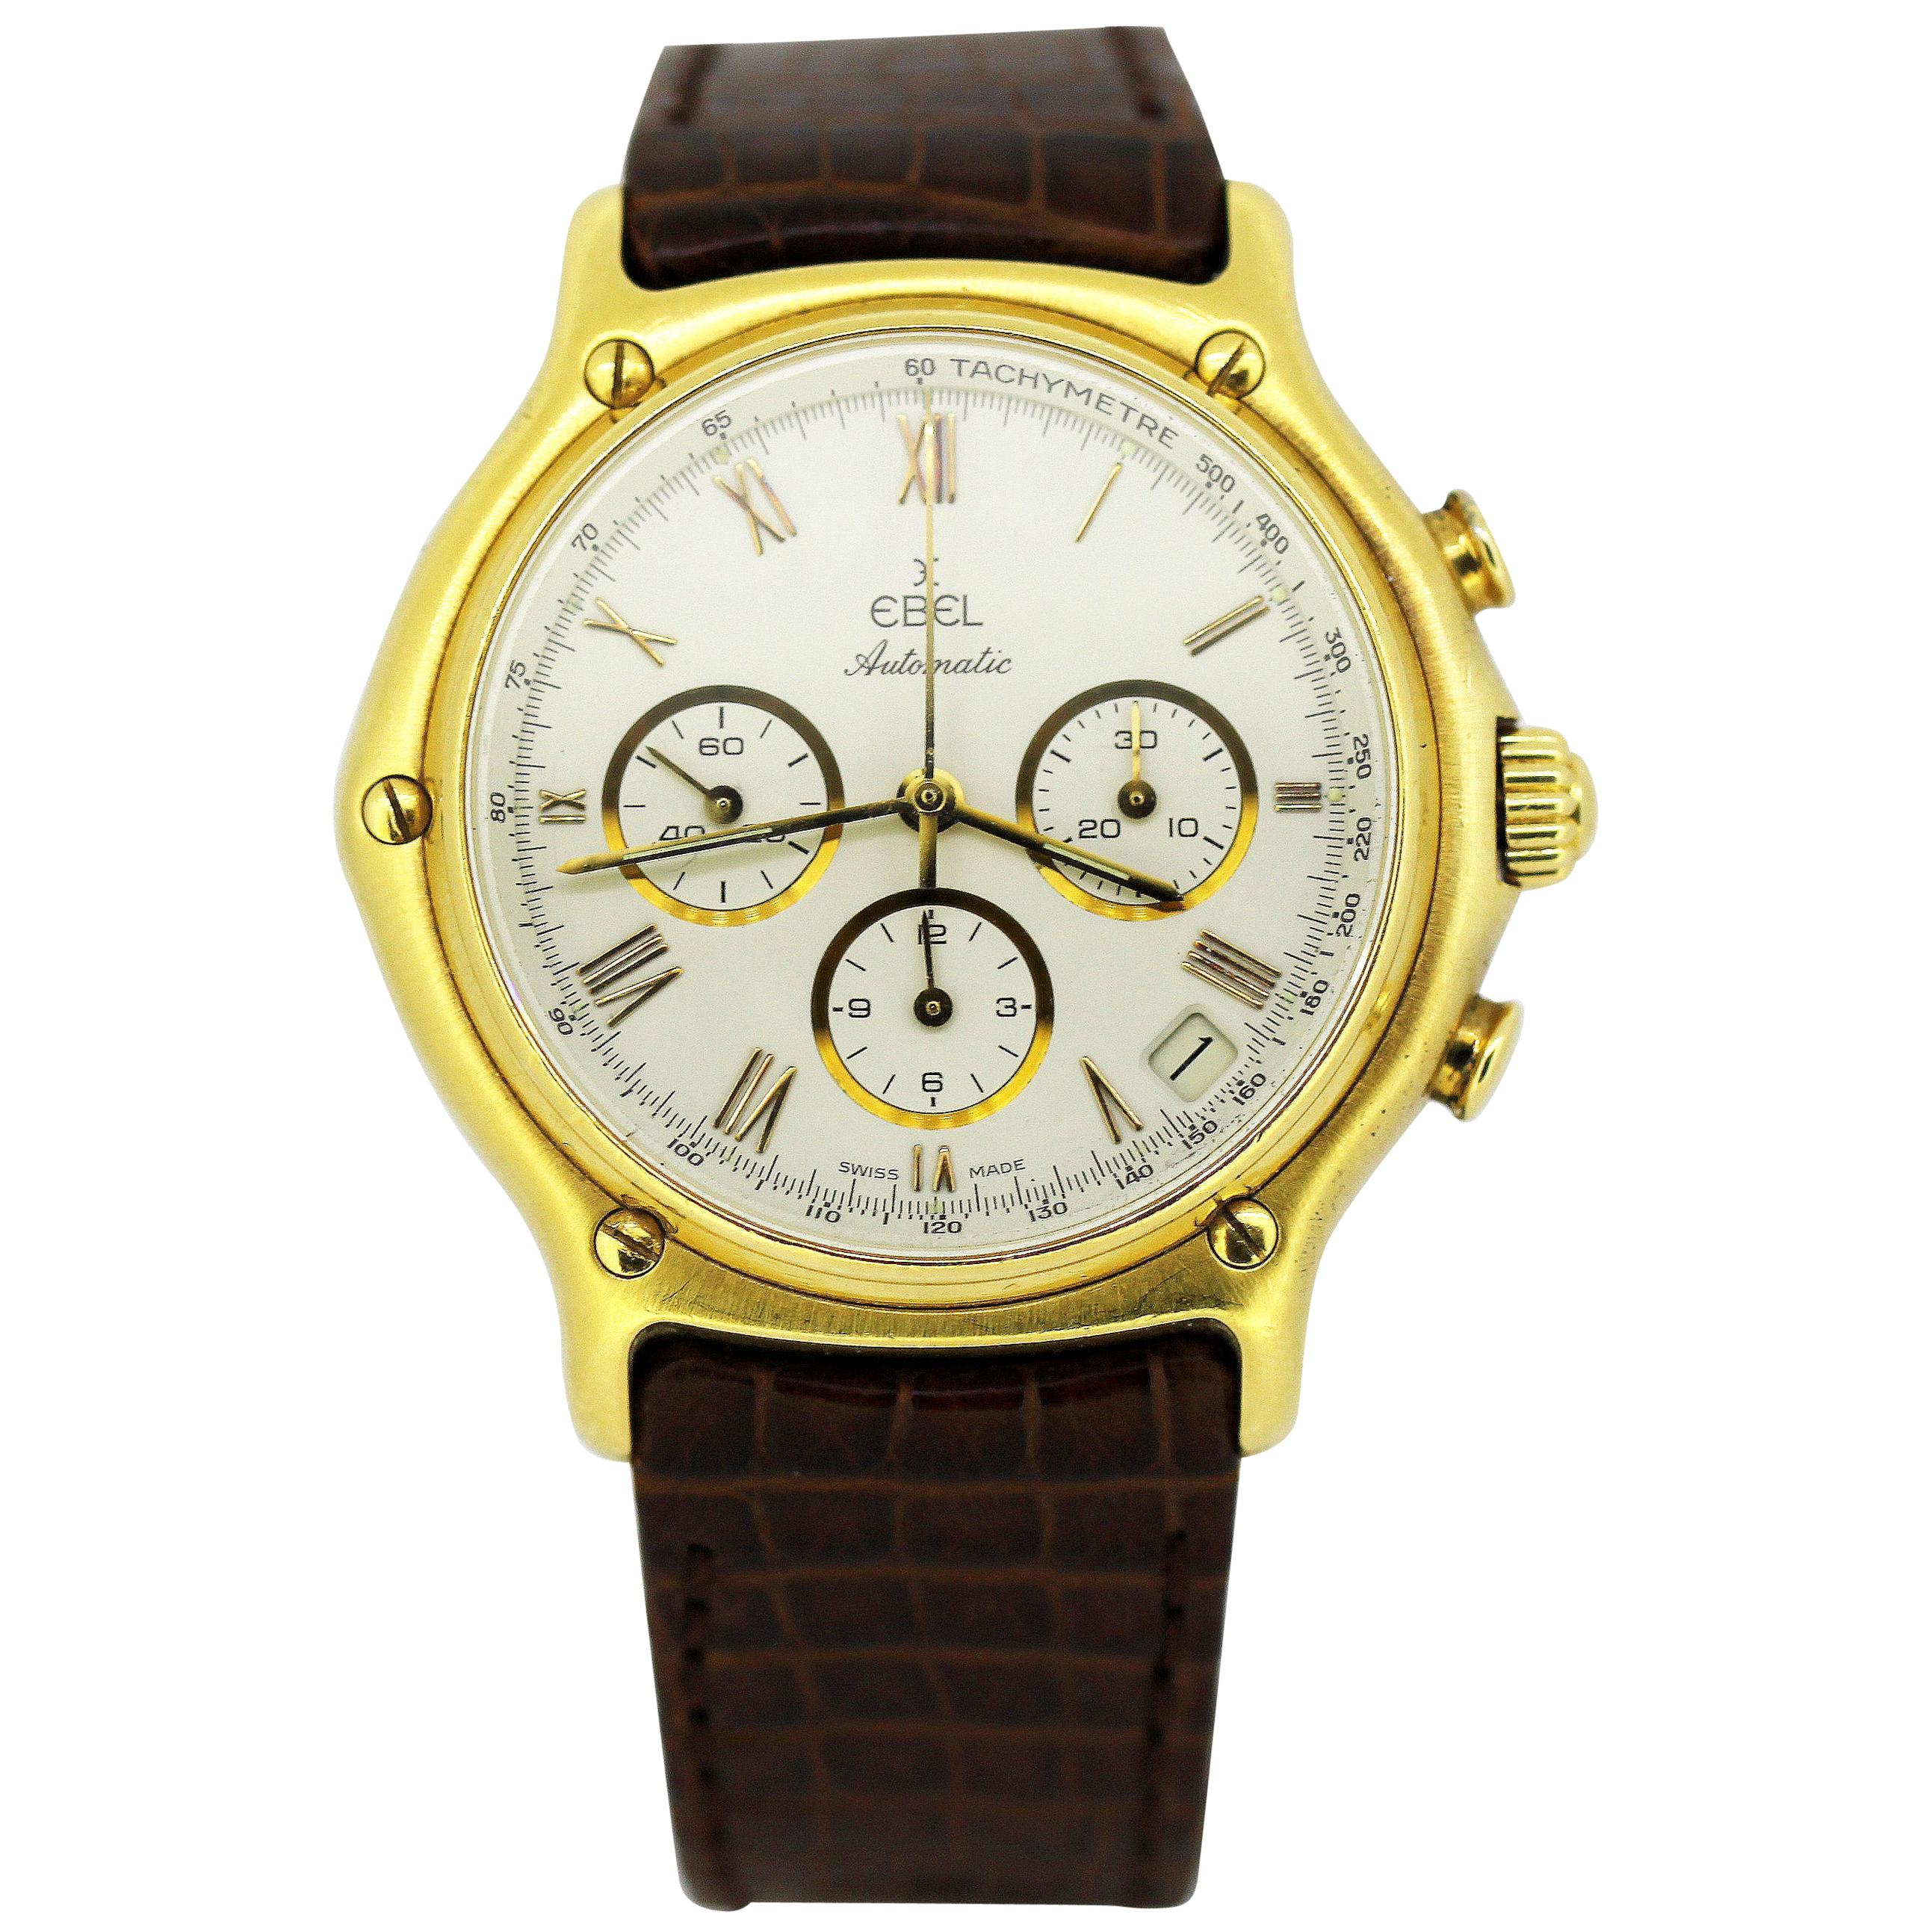 Ebel 1911 Men's Chronograph Watch in 18 Karat Gold, circa 1990s at 1stDibs  | ebel 1911 18k gold watch, ebel watch 1911